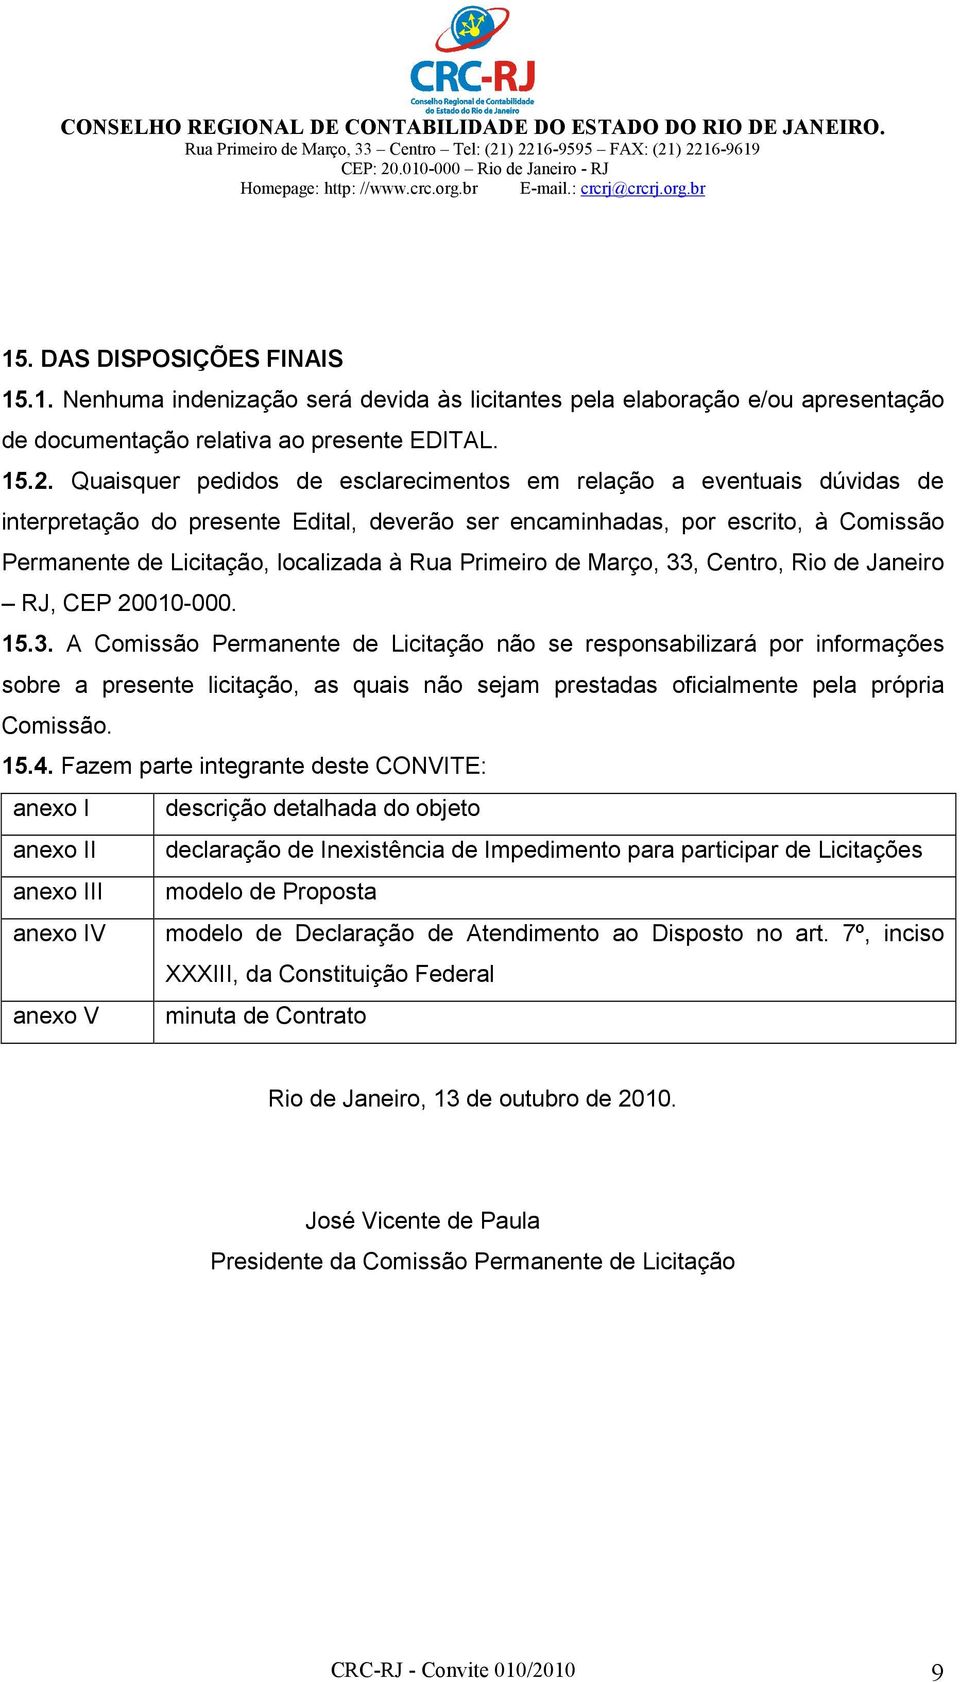 Primeiro de Março, 33, Centro, Rio de Janeiro RJ, CEP 20010-000. 15.3. A Comissão Permanente de Licitação não se responsabilizará por informações sobre a presente licitação, as quais não sejam prestadas oficialmente pela própria Comissão.